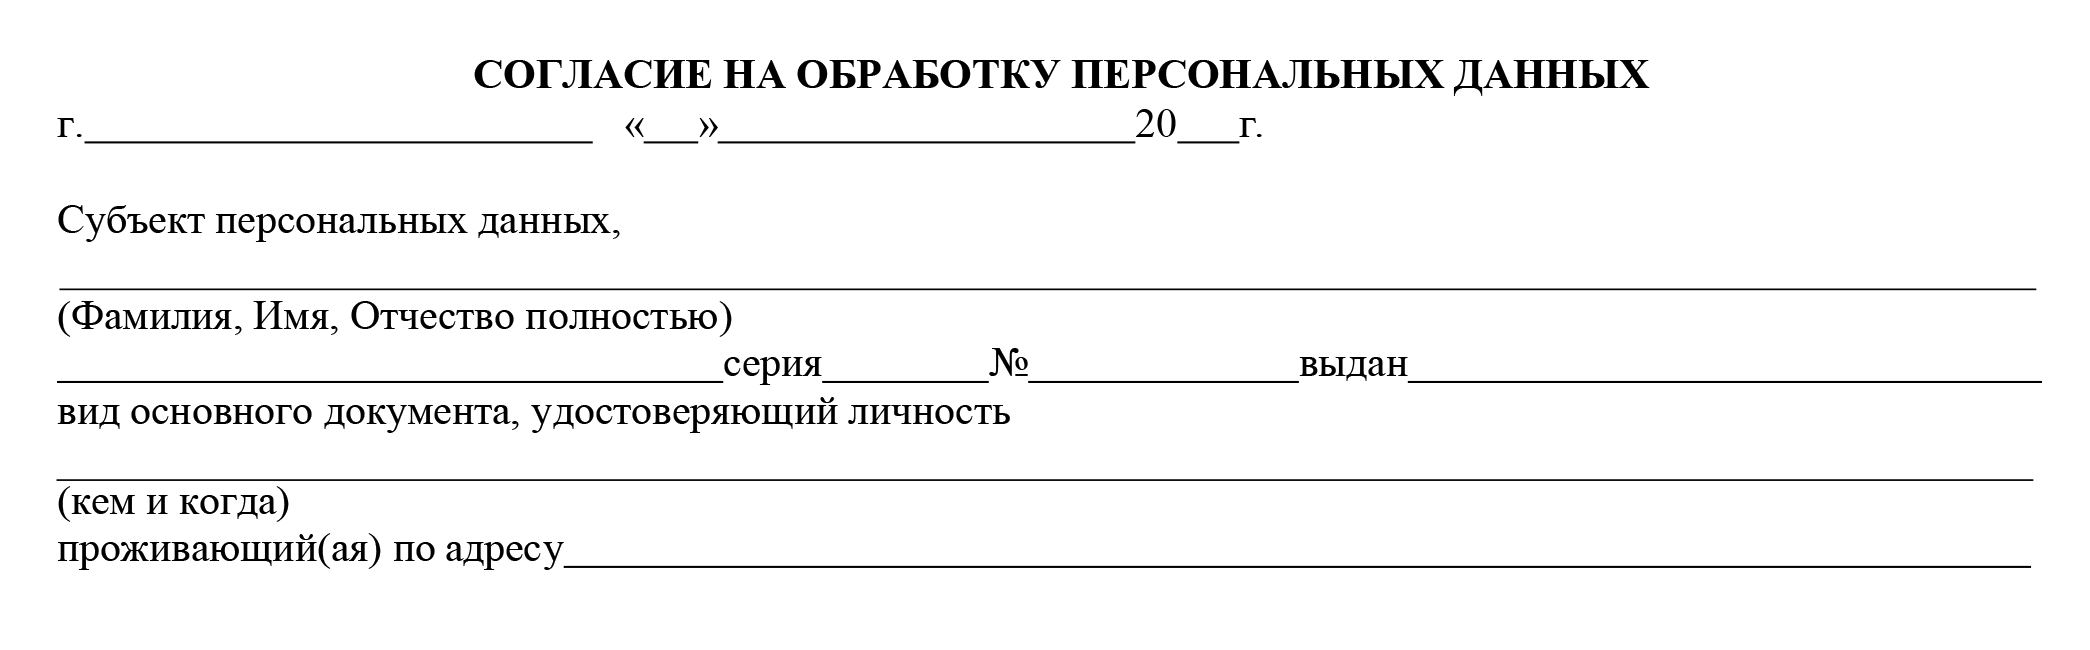 Согласие на обработку персональных данных для жителей Москвы. Источник: blsrussiaportugal.com